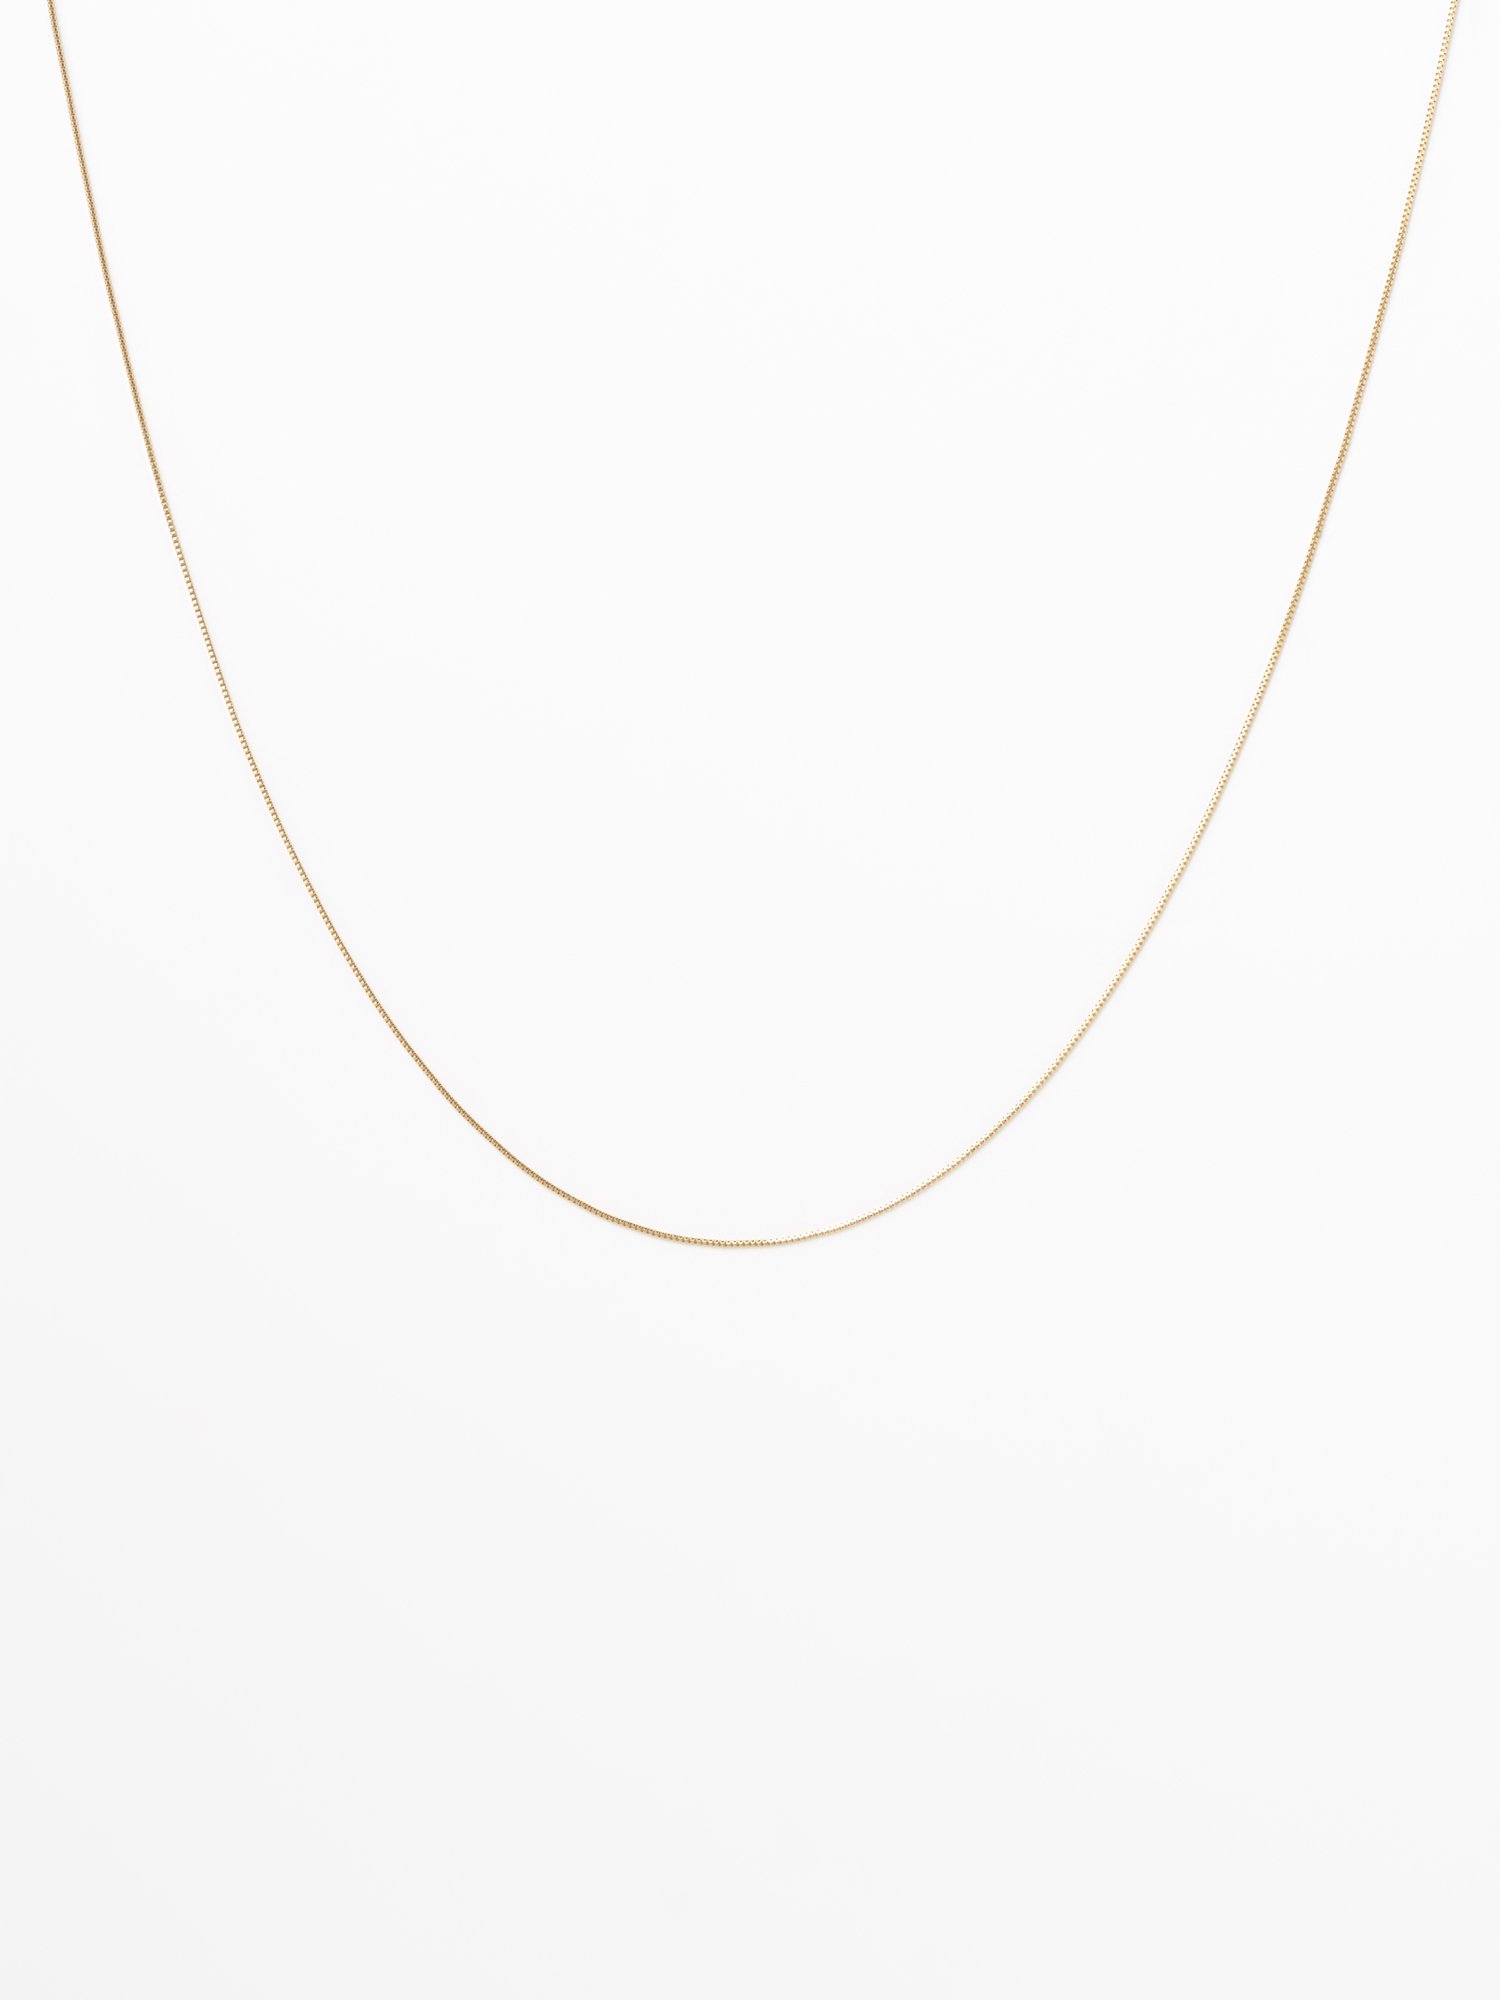  SOPHISTICATED VINTAGE / Gold line necklace / 380mm / ߸˾